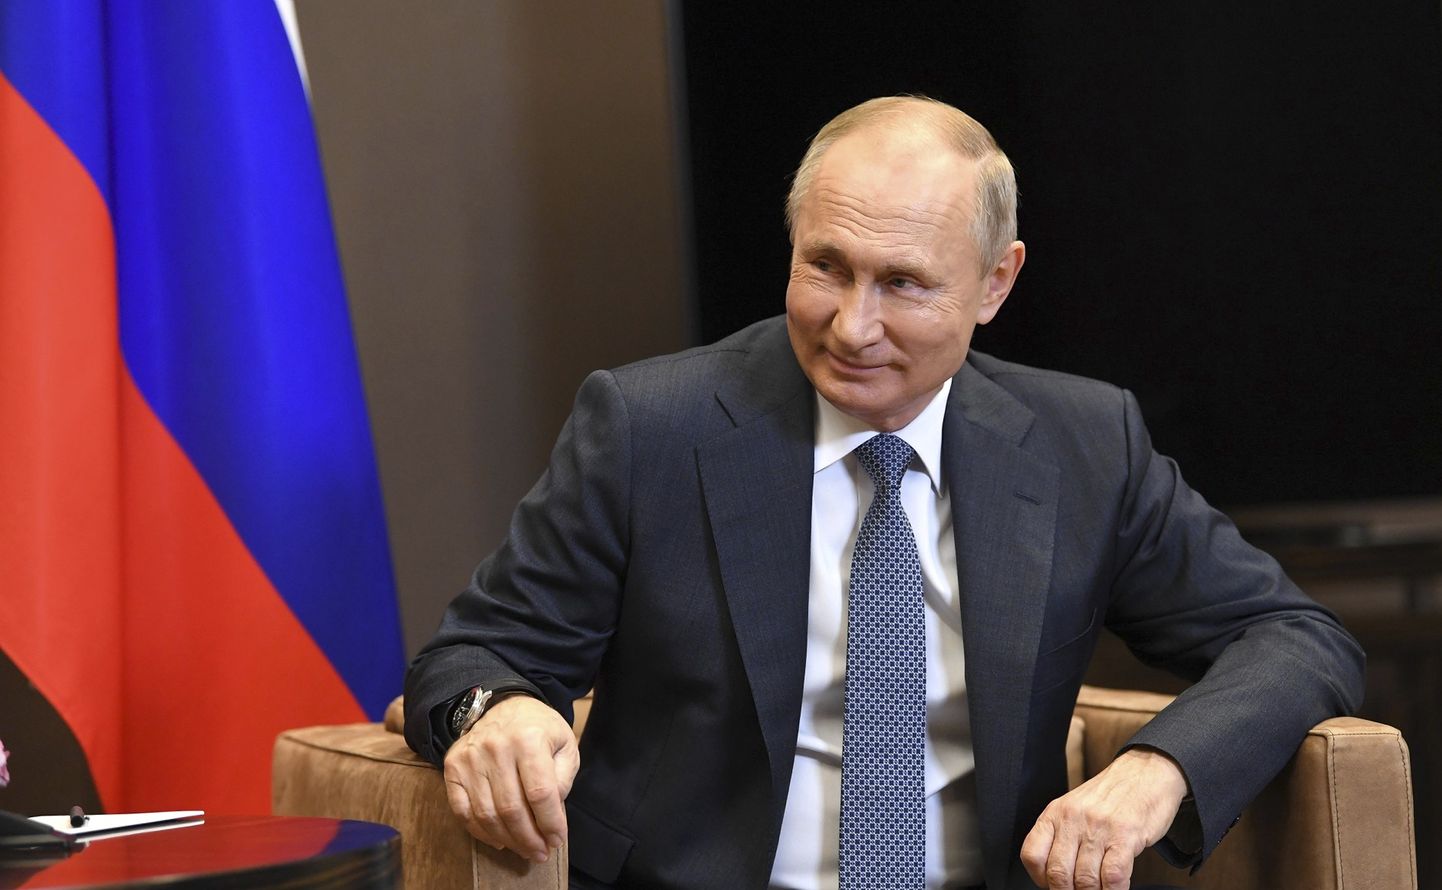 Venemaa president Vladimir Putin 12. novembril 2020 Sotšis, kus ta kohtus Taga-Kaukaasia vaidlusaluse territooriumi Abhaasia presidendi Aslan Bzhaniaga